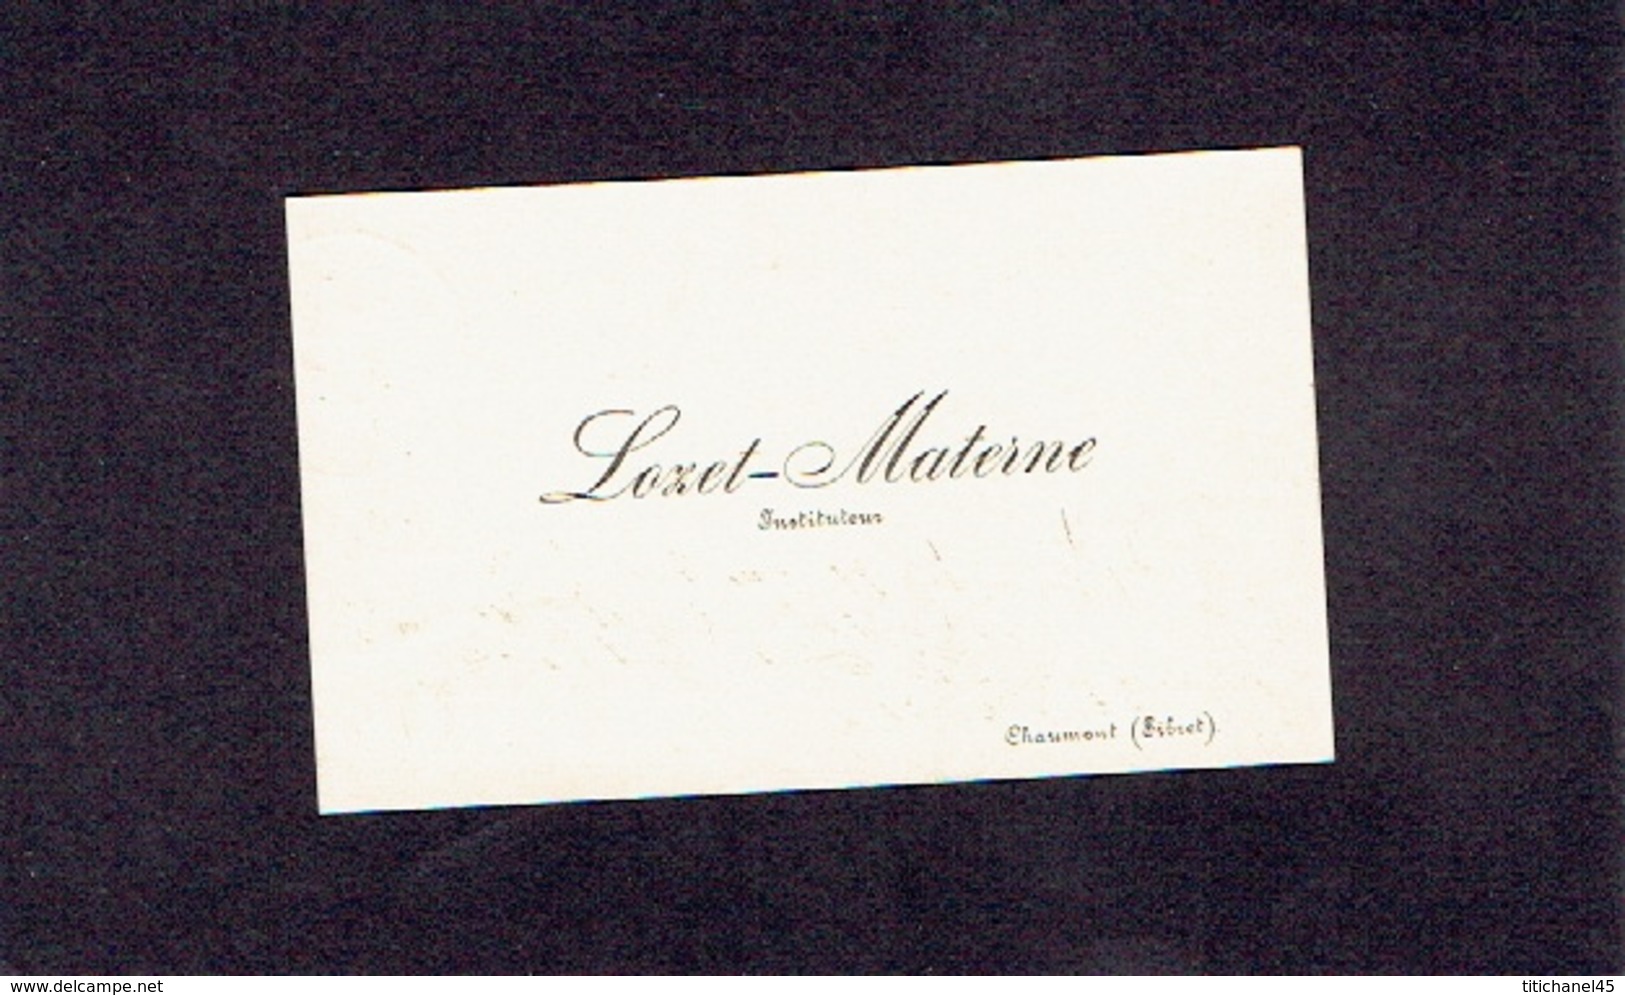 CHAUMONT (SIBRET) 1896 ANCIENNE CARTE DE VISITE - LOZET-MATERNE - Instituteur - Cartes De Visite